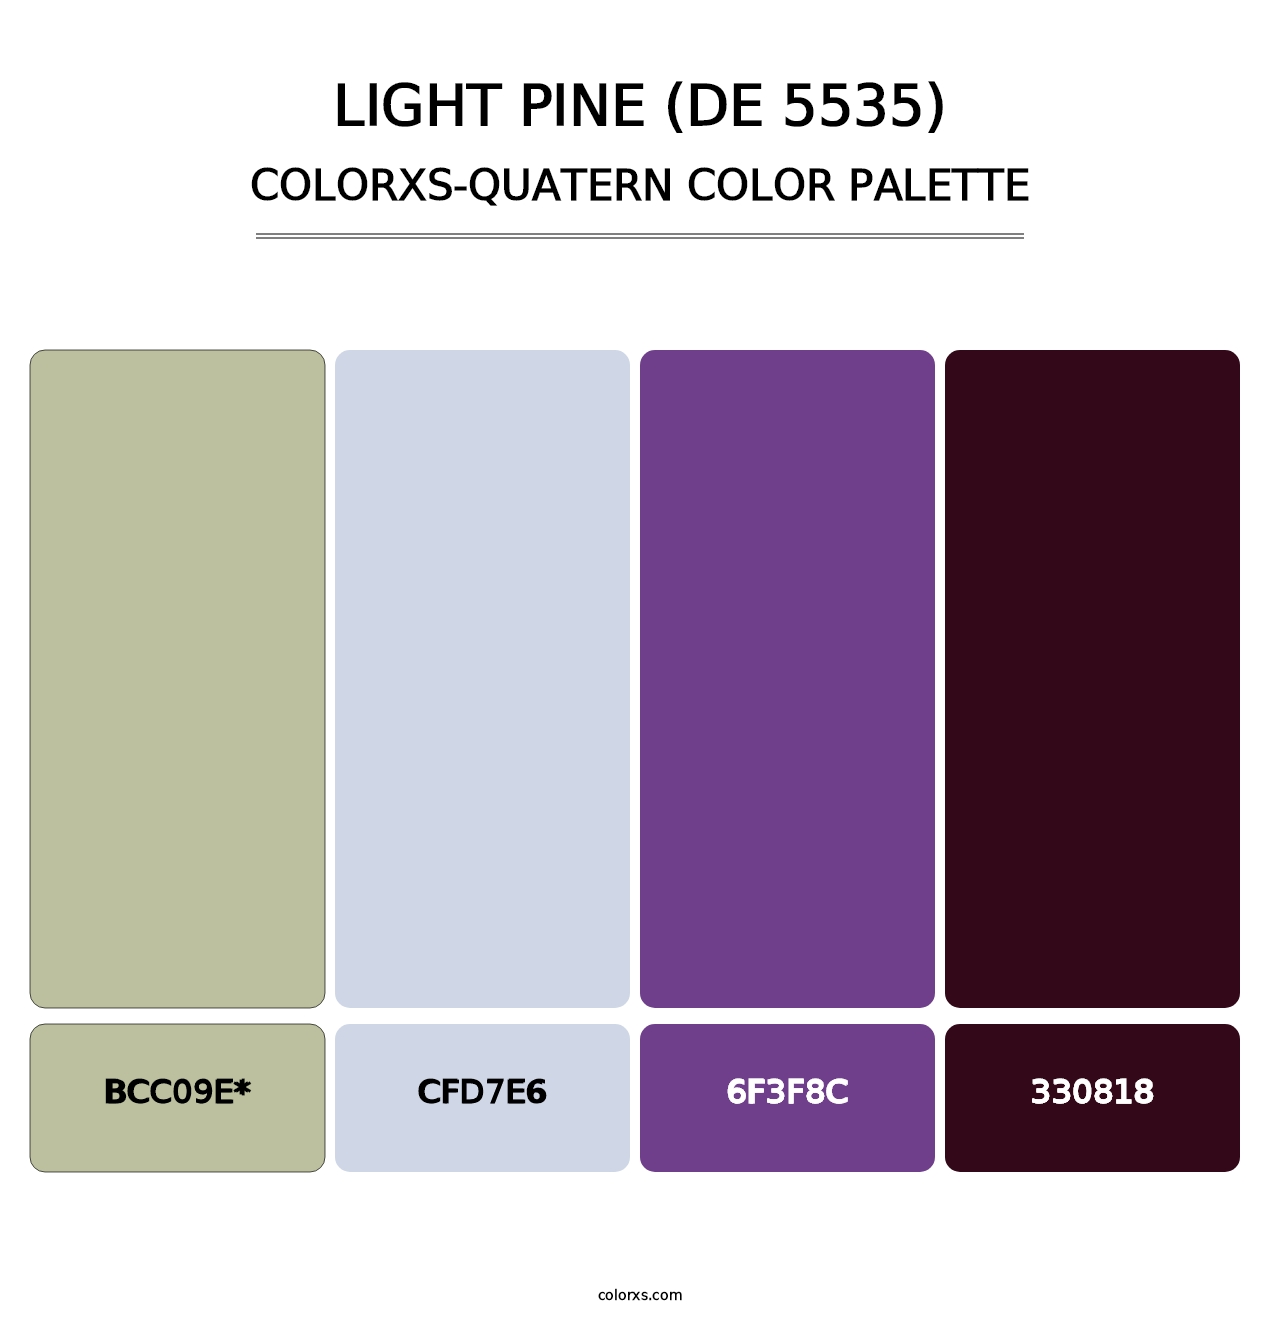 Light Pine (DE 5535) - Colorxs Quatern Palette